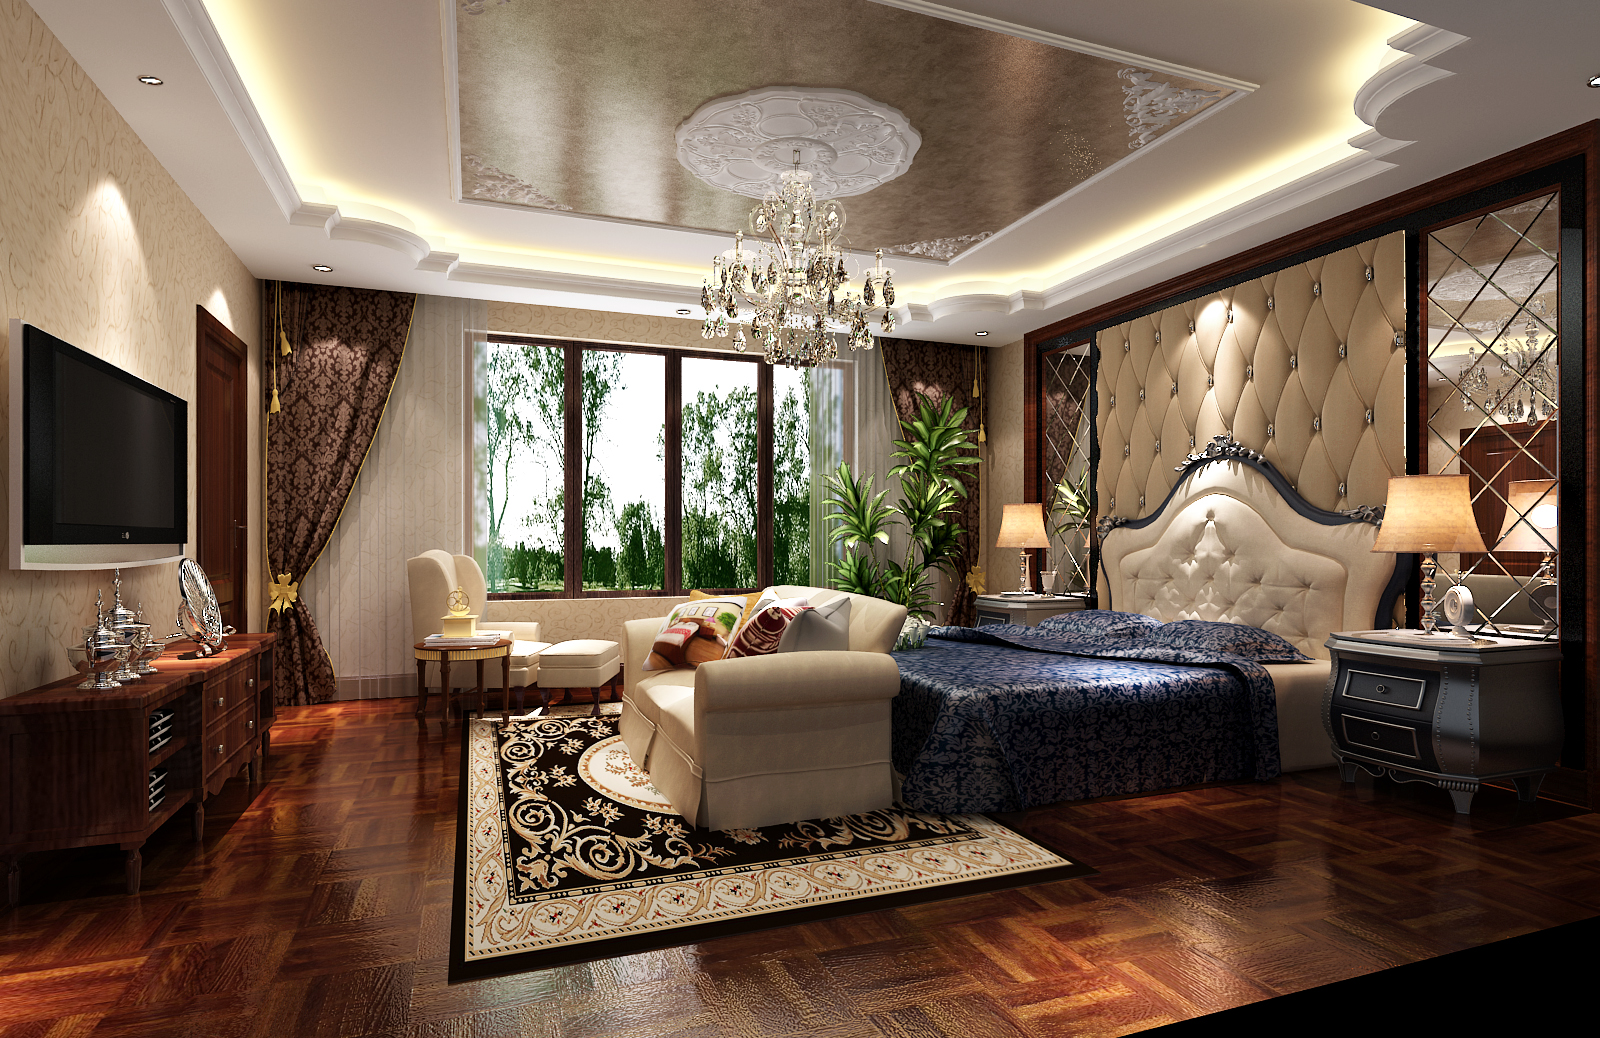 中式 欧式 混搭 别墅 燕西台 卧室图片来自沙漠雪雨在燕西台 中欧混搭风格的分享